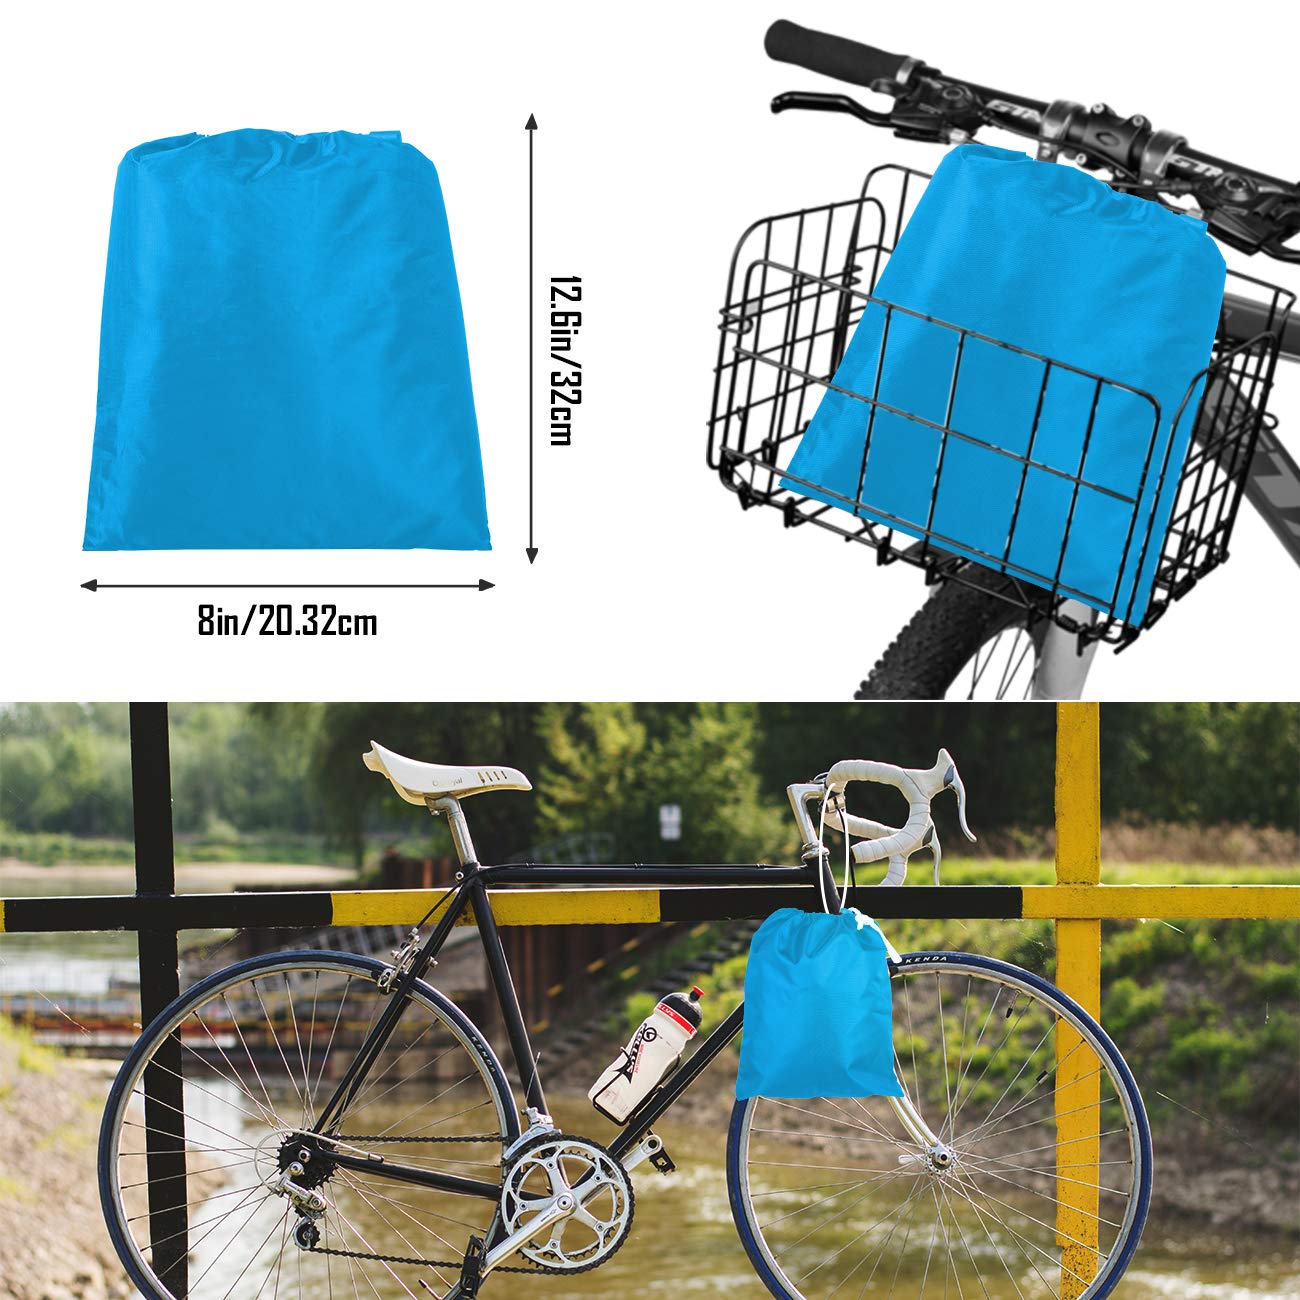 Favoto Blue Bike Cover